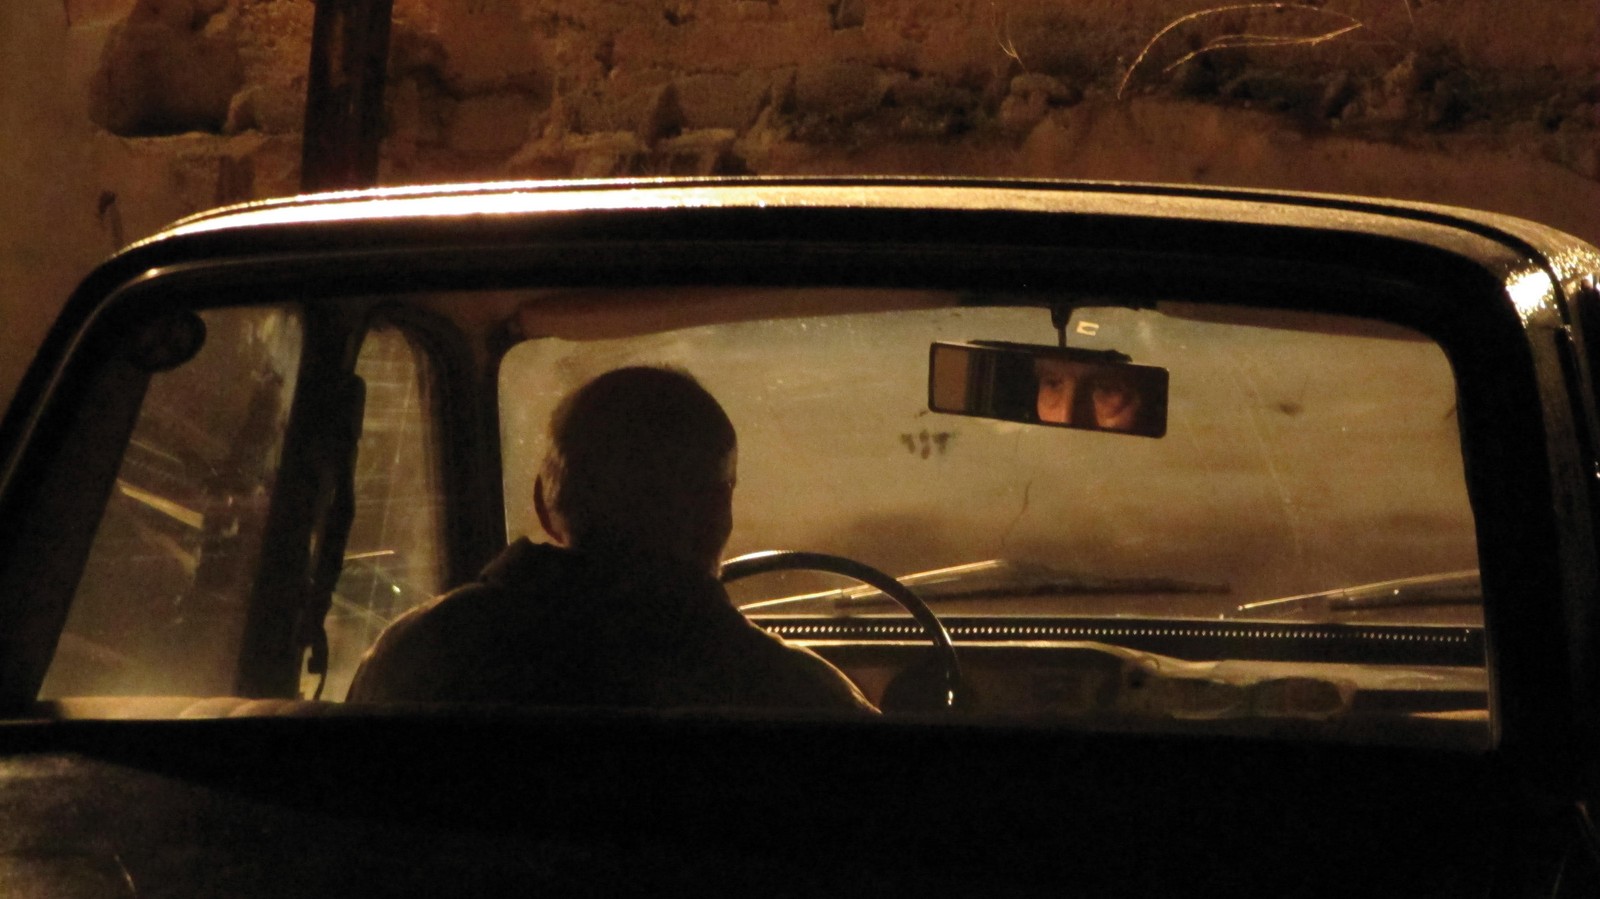 //www.occitanie-films.netUn homme est assis dans une voiture, seul, il regarde au loin